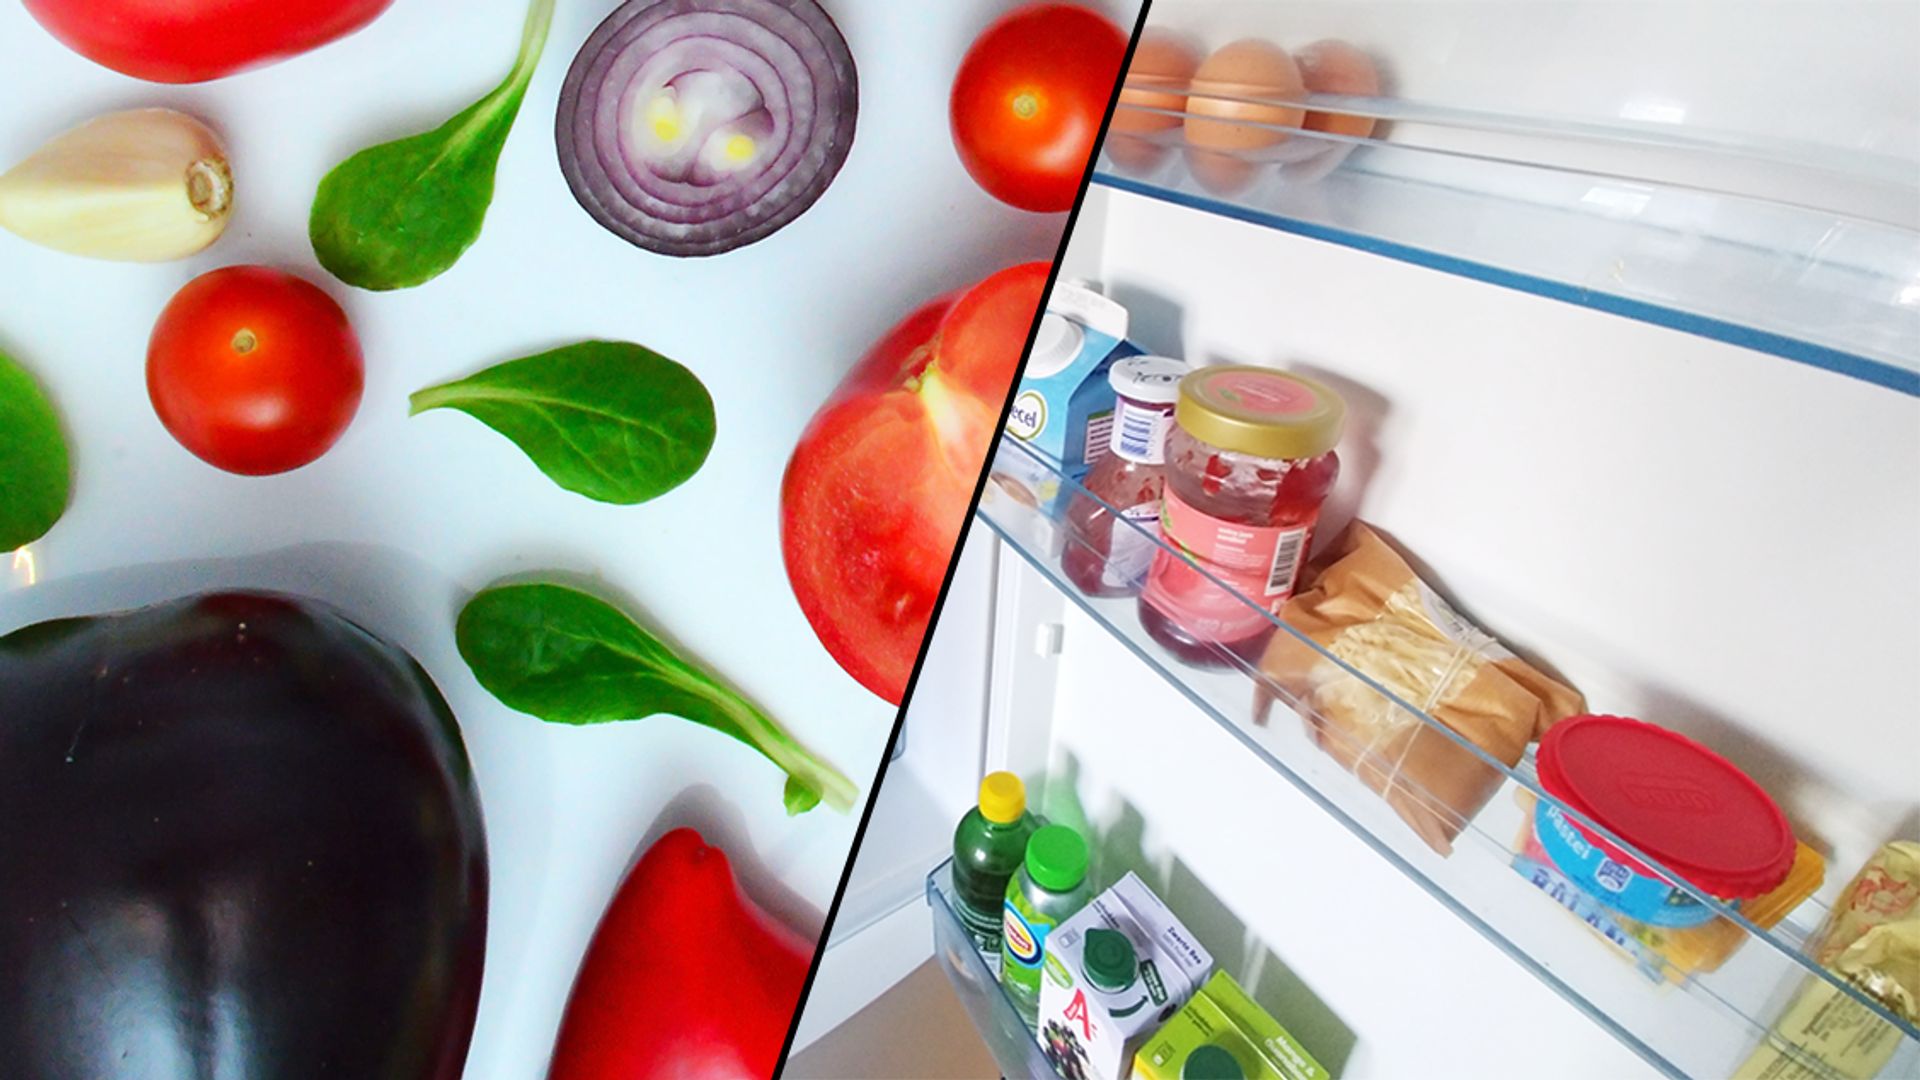 Psychologisch Een evenement Prediken Deze 10 groenten hoef je níet in de koelkast te bewaren - Kassa - BNNVARA